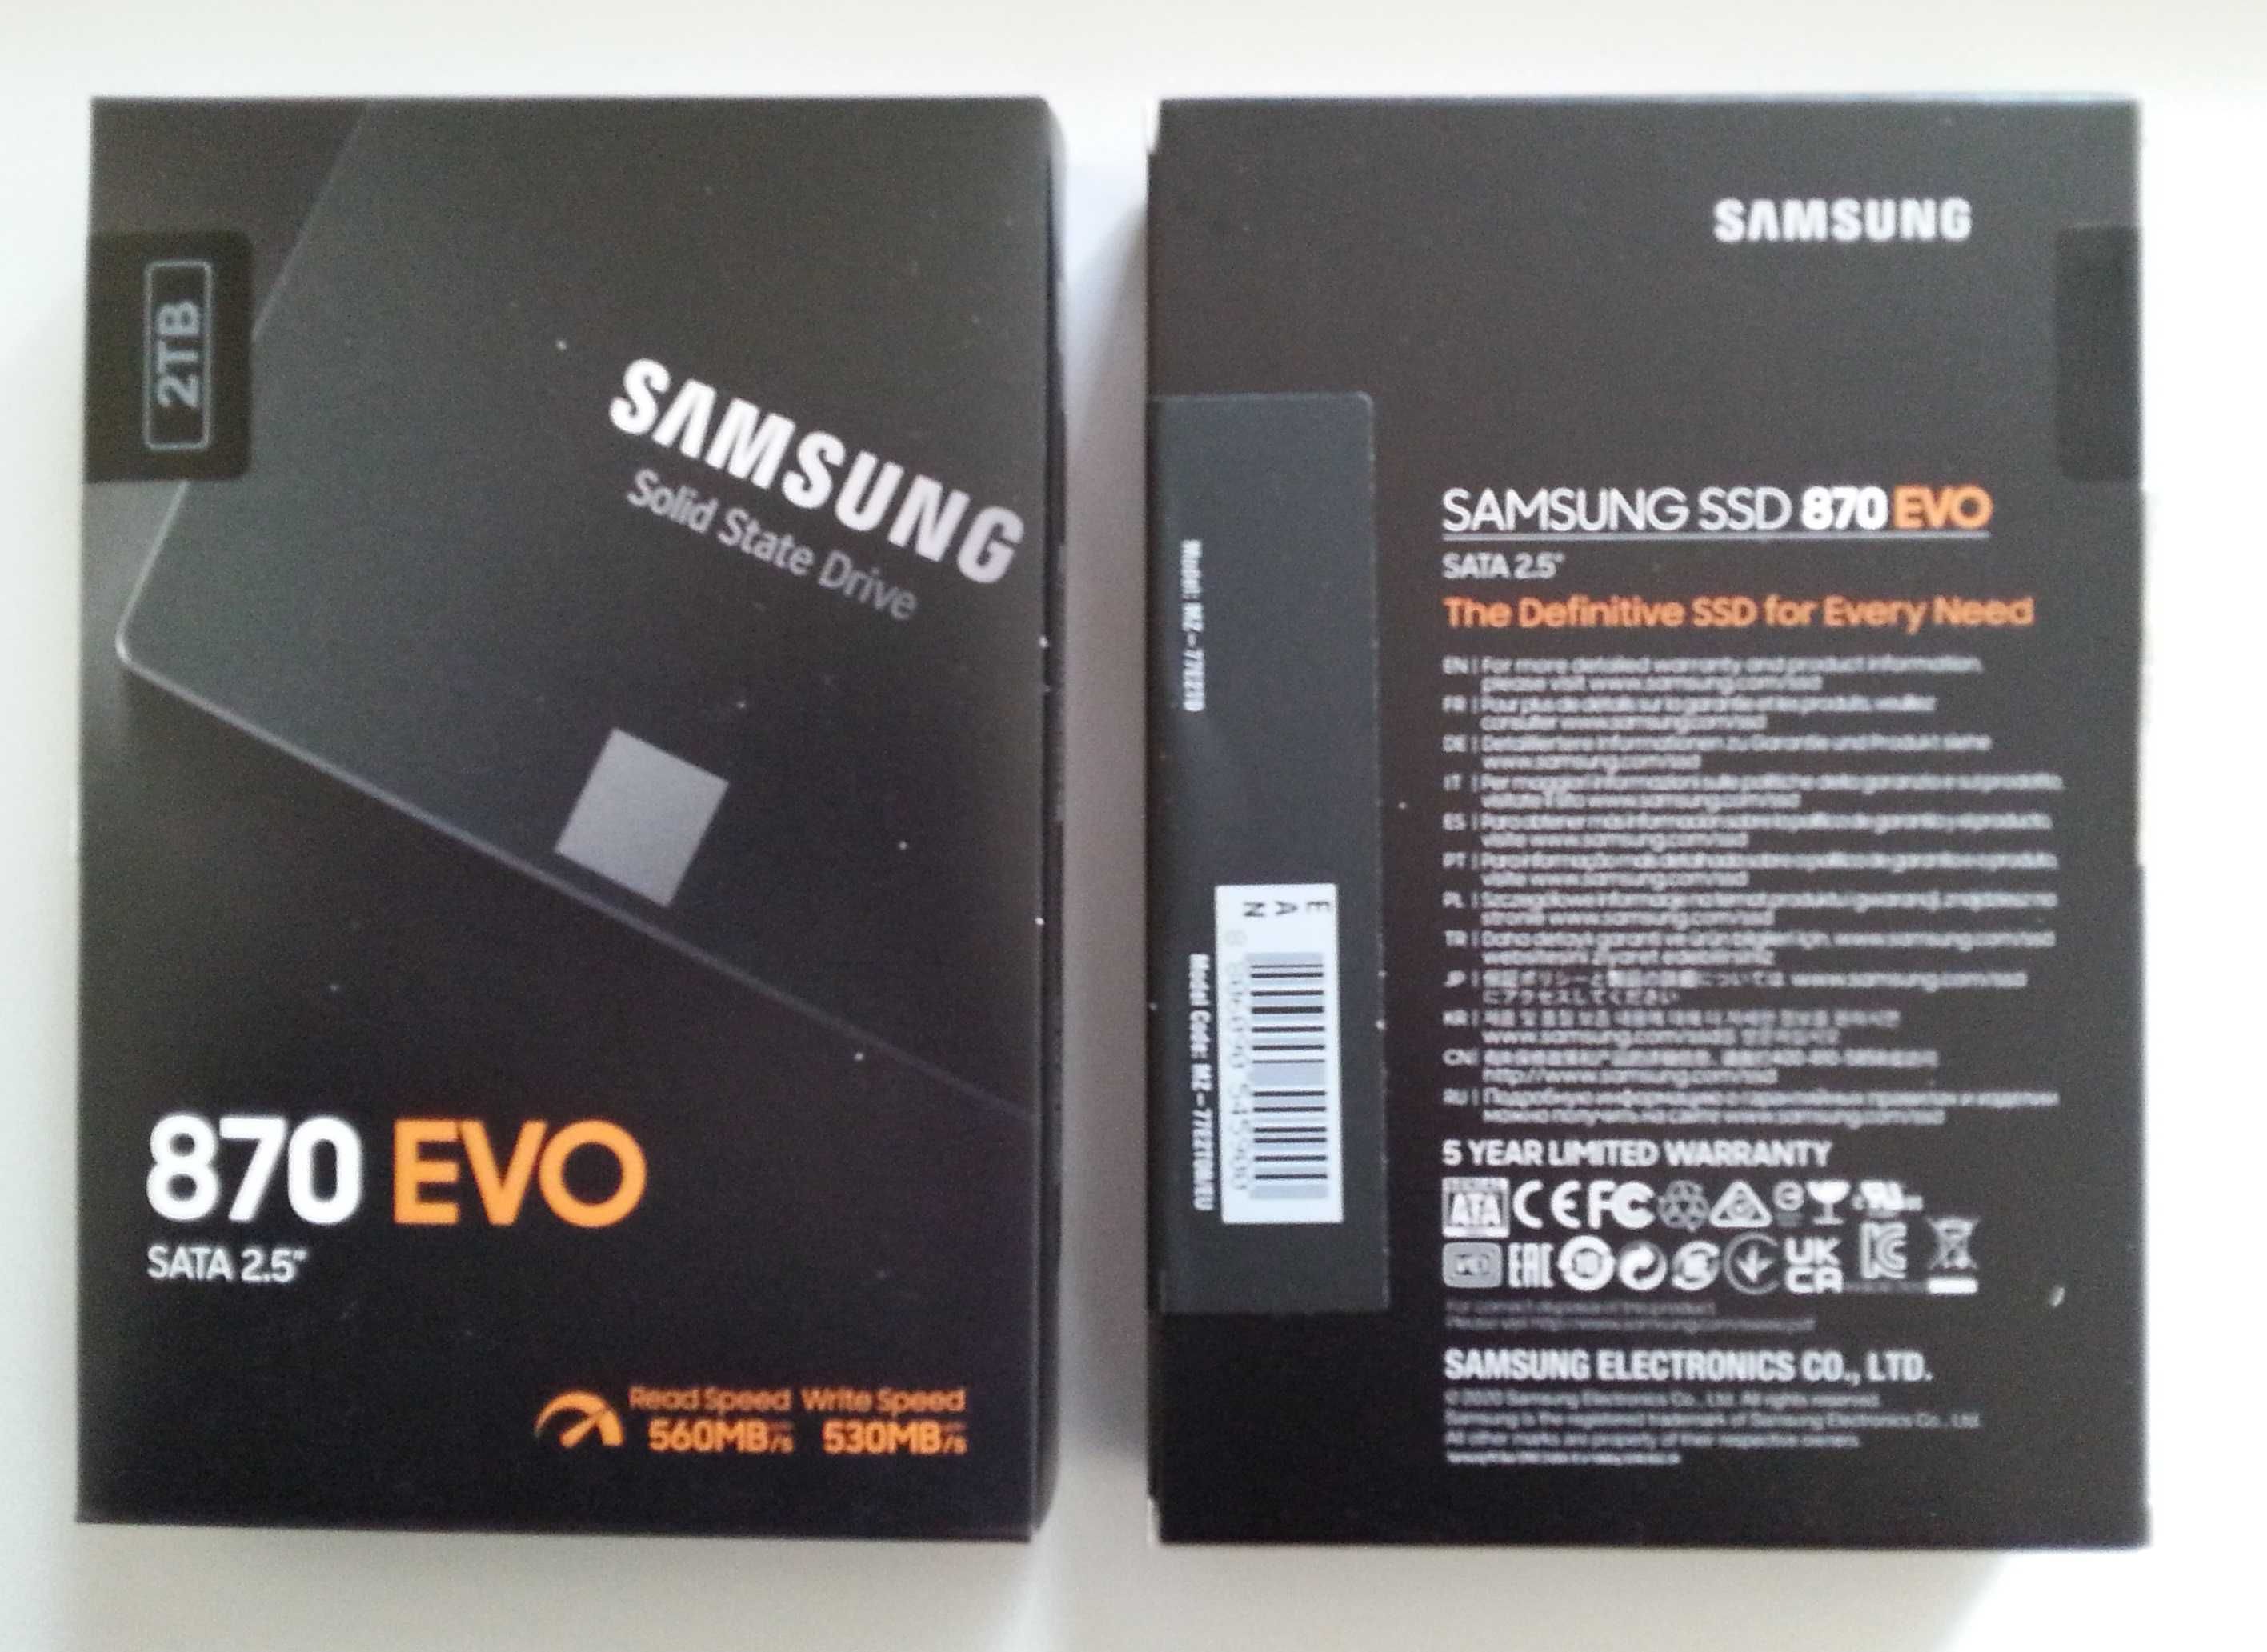 Samsung-stan idealny-Dysk ssd EVO oraz PRO-250,256gb.Polecam inne